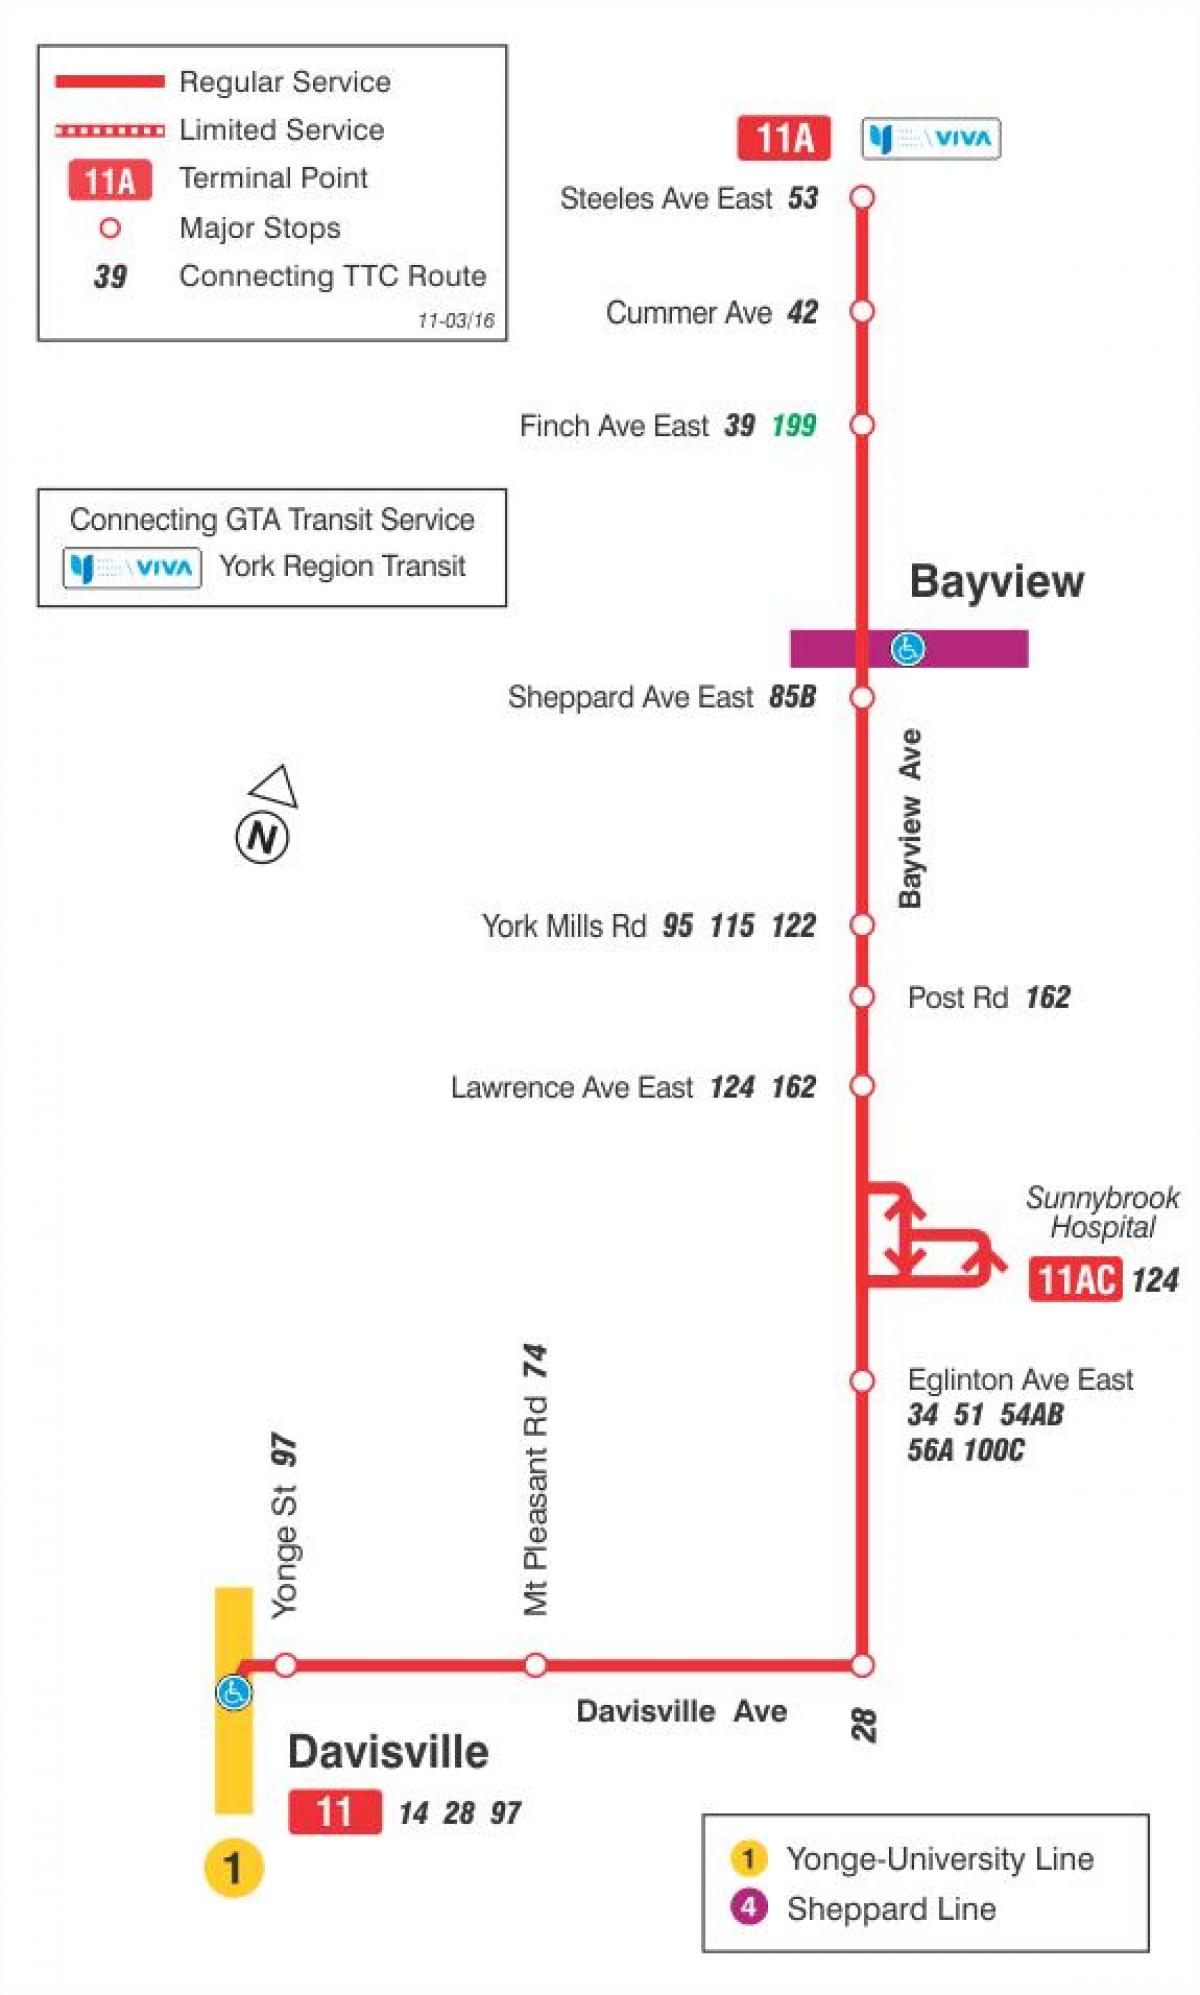 মানচিত্র TTC 11 Bayview বাস রুট টরন্টো